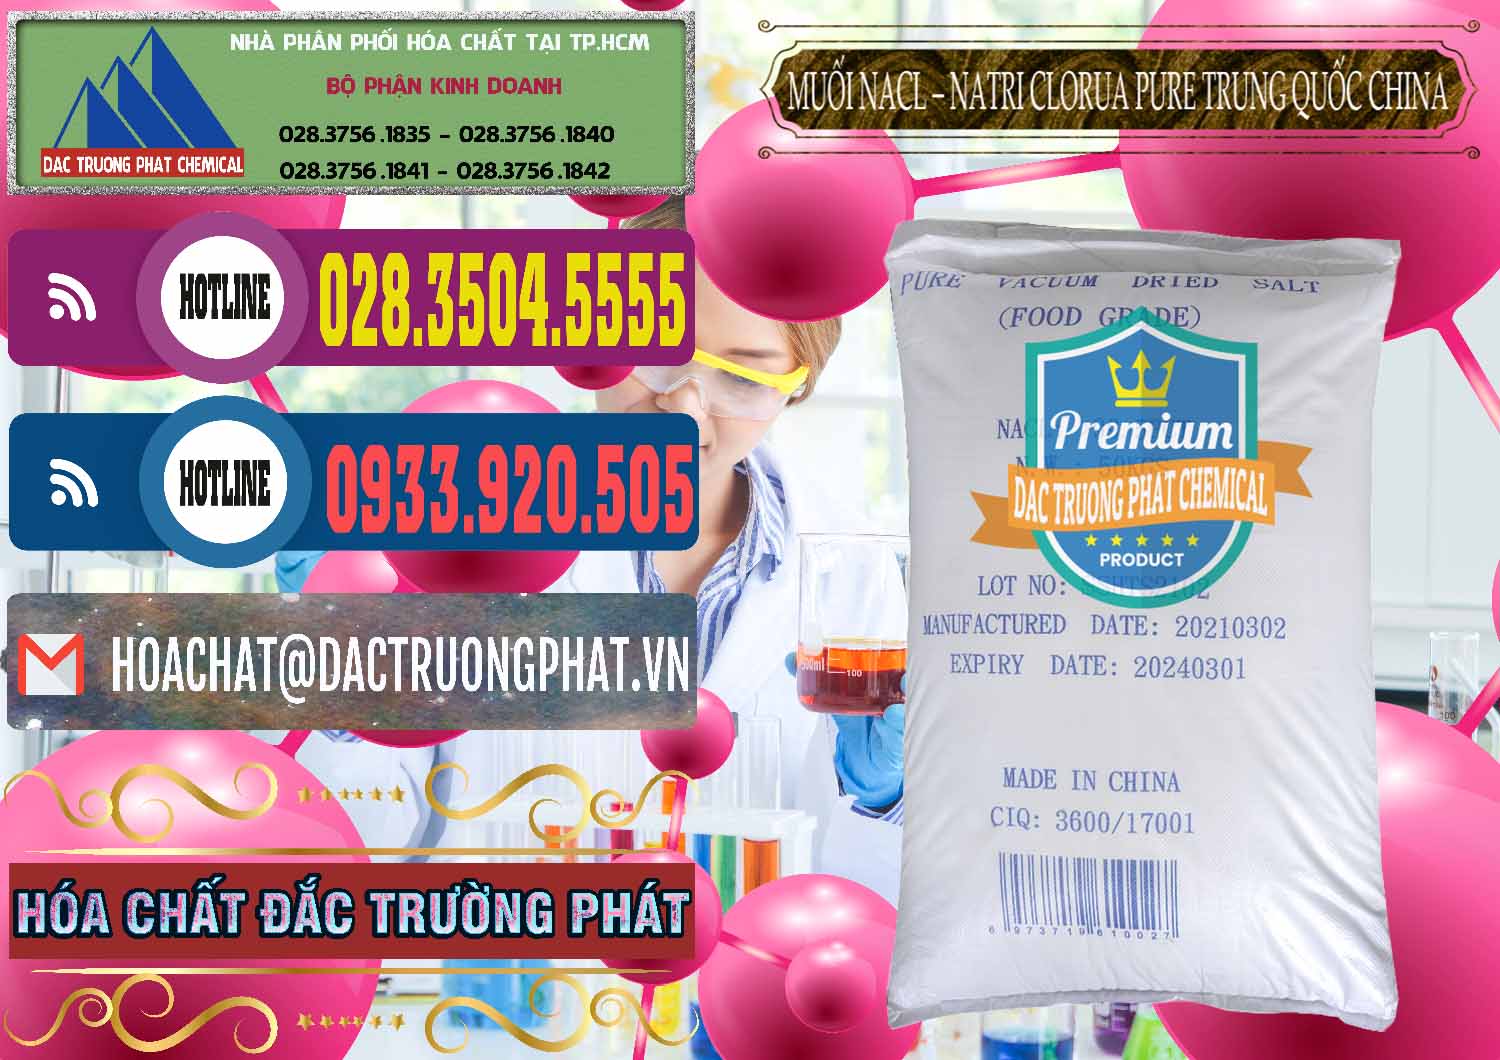 Nơi cung cấp - bán Muối NaCL – Sodium Chloride Pure Trung Quốc China - 0230 - Nhà cung cấp ( bán ) hóa chất tại TP.HCM - muabanhoachat.com.vn